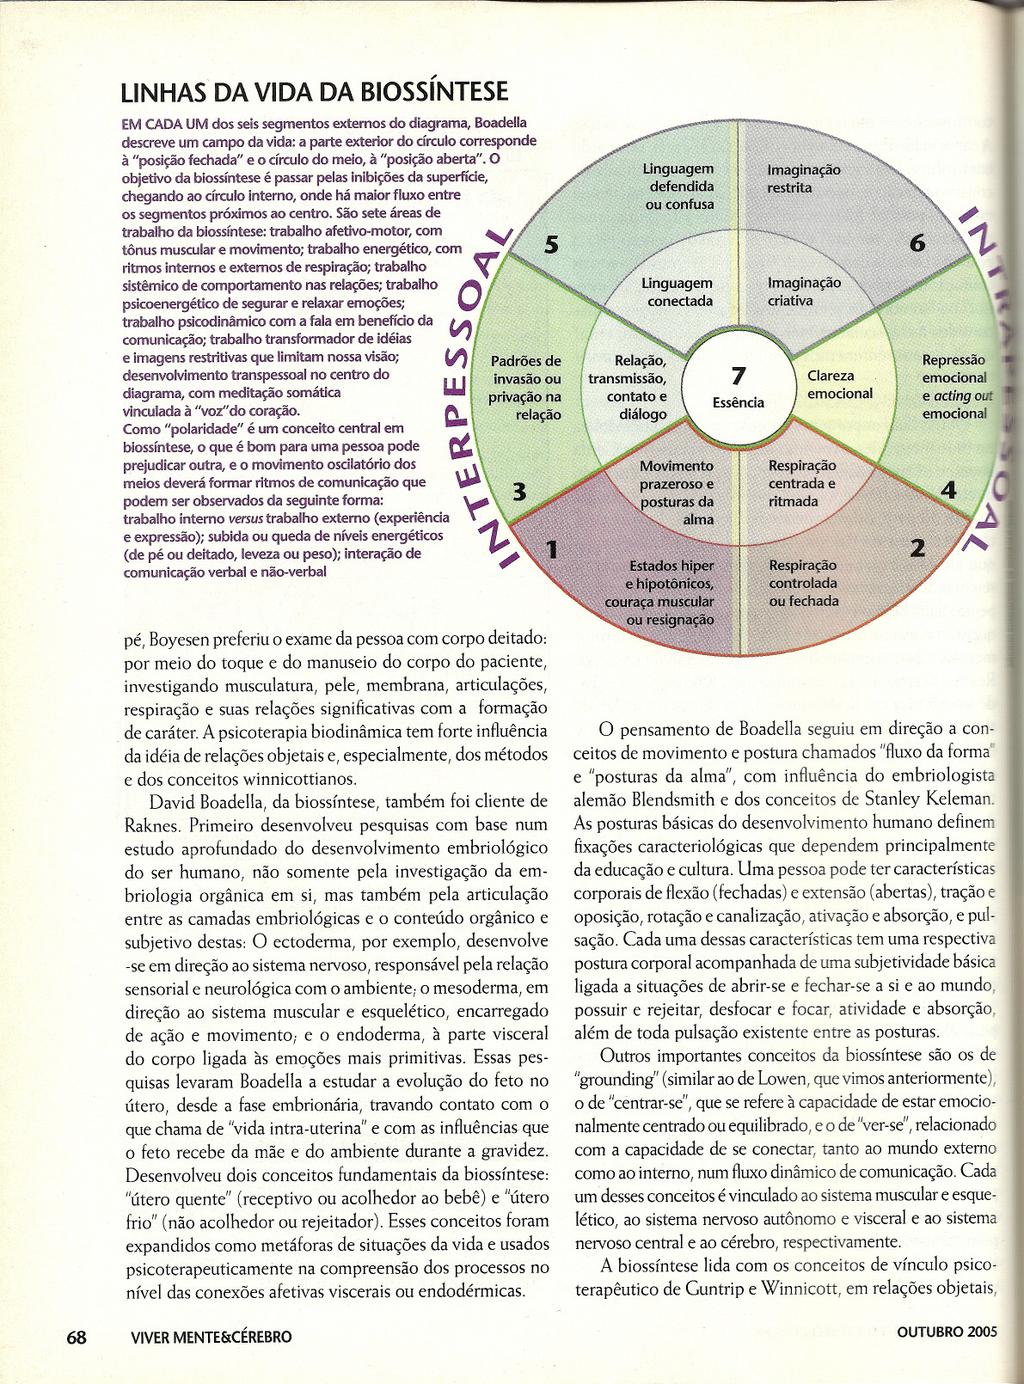 ., LINHASDAVIDADABIOSSINTESE EMCADAUM dos seis segmentos externos do diagrama, Boadella descreve um campo da vida: a parte exterior do círculo corresponde à "posição fechada" e o círculo do meio, à